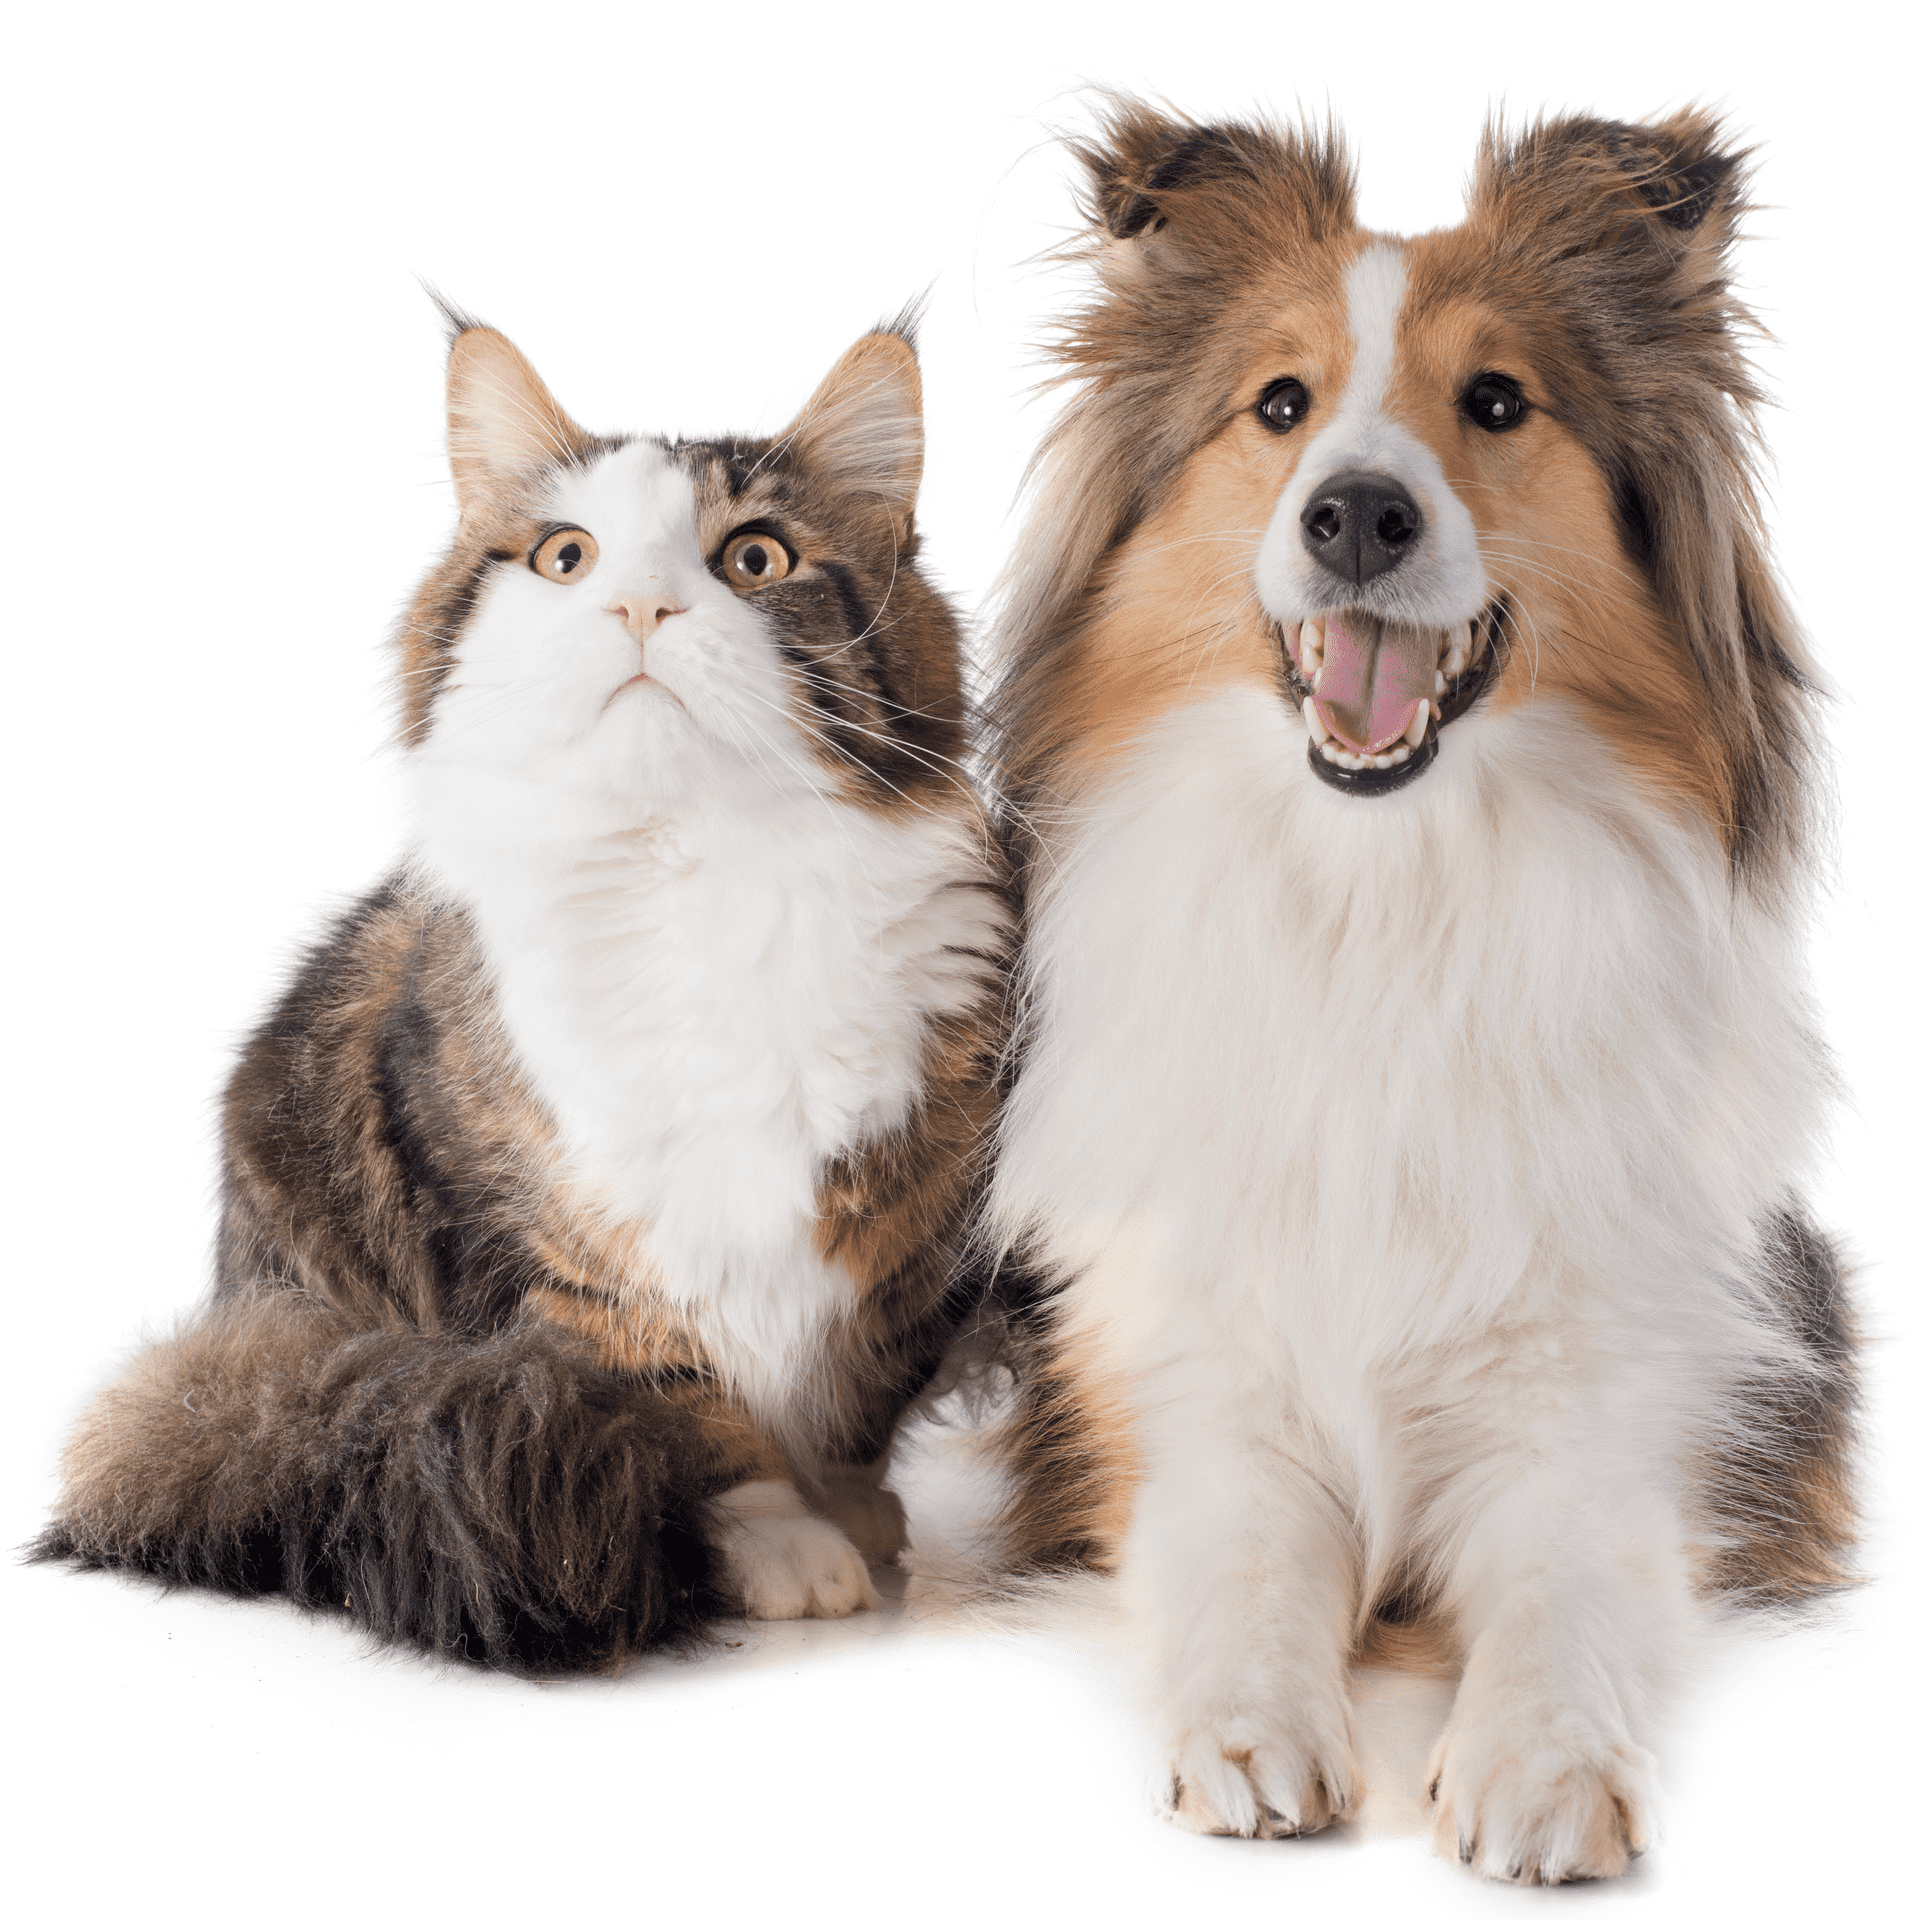 Deep learning permite detectar la presencia de perros o gatos en esta foto